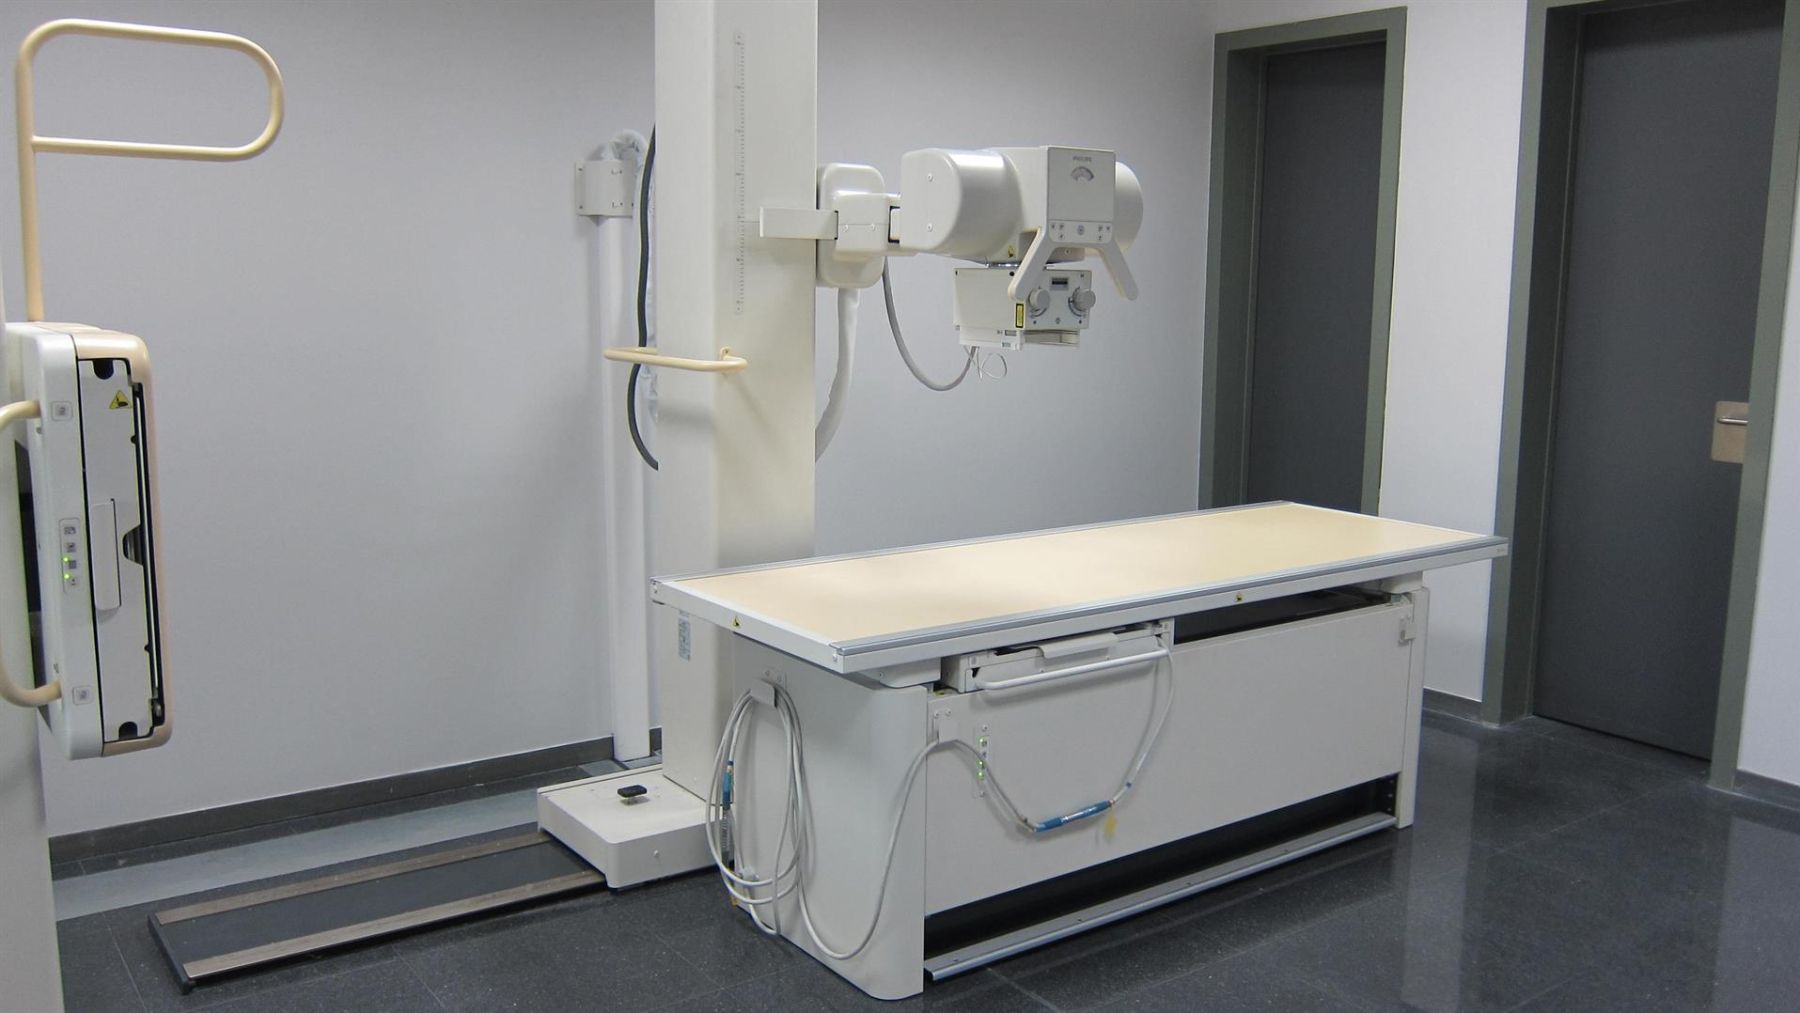 Imagen de un aparato de radiología.